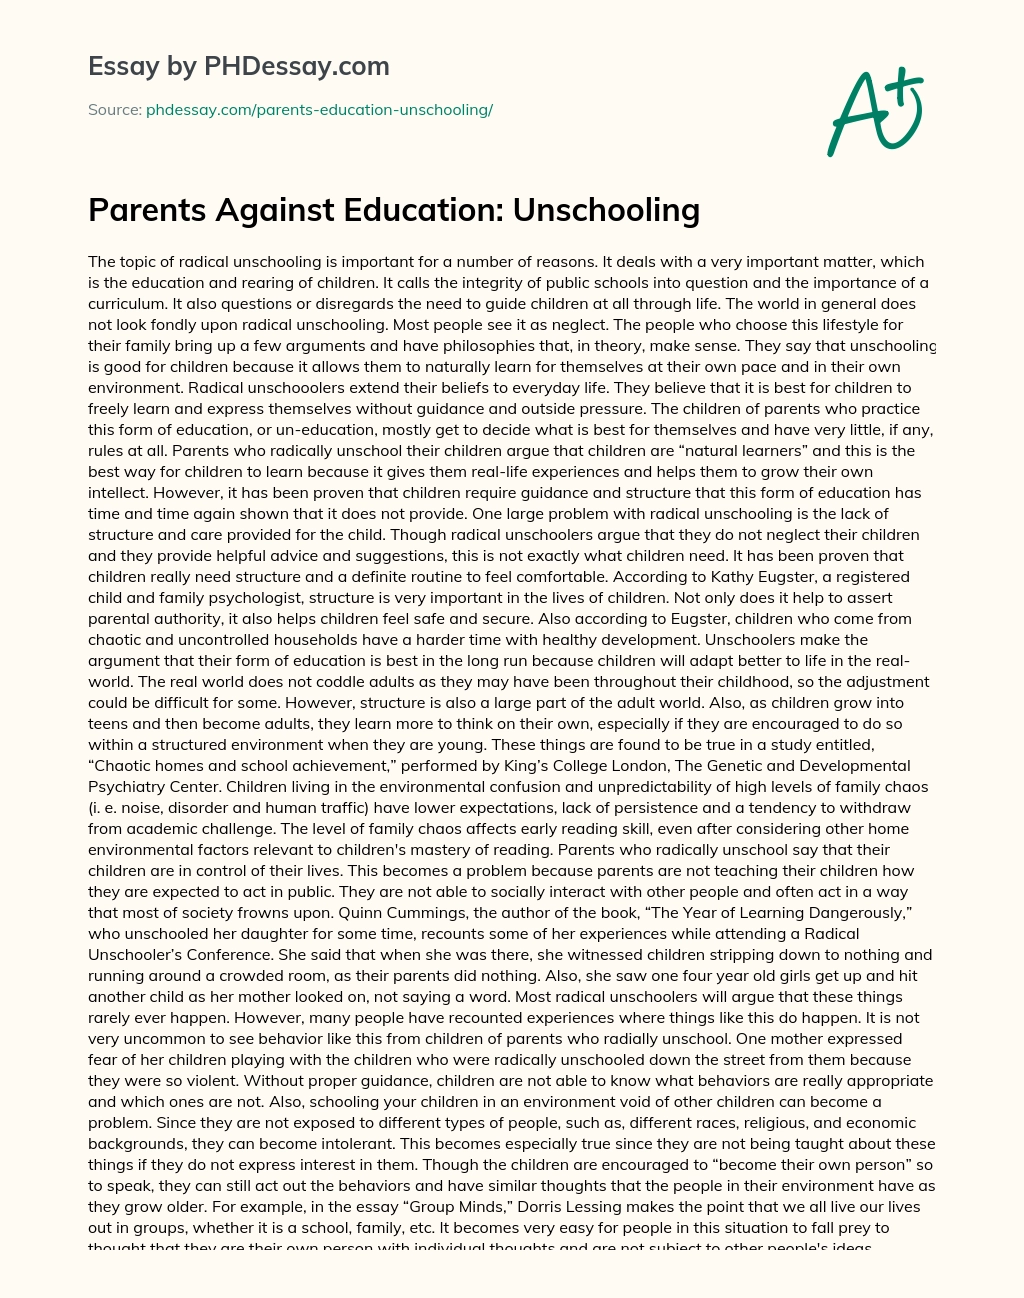 Parents Against Education: Unschooling essay